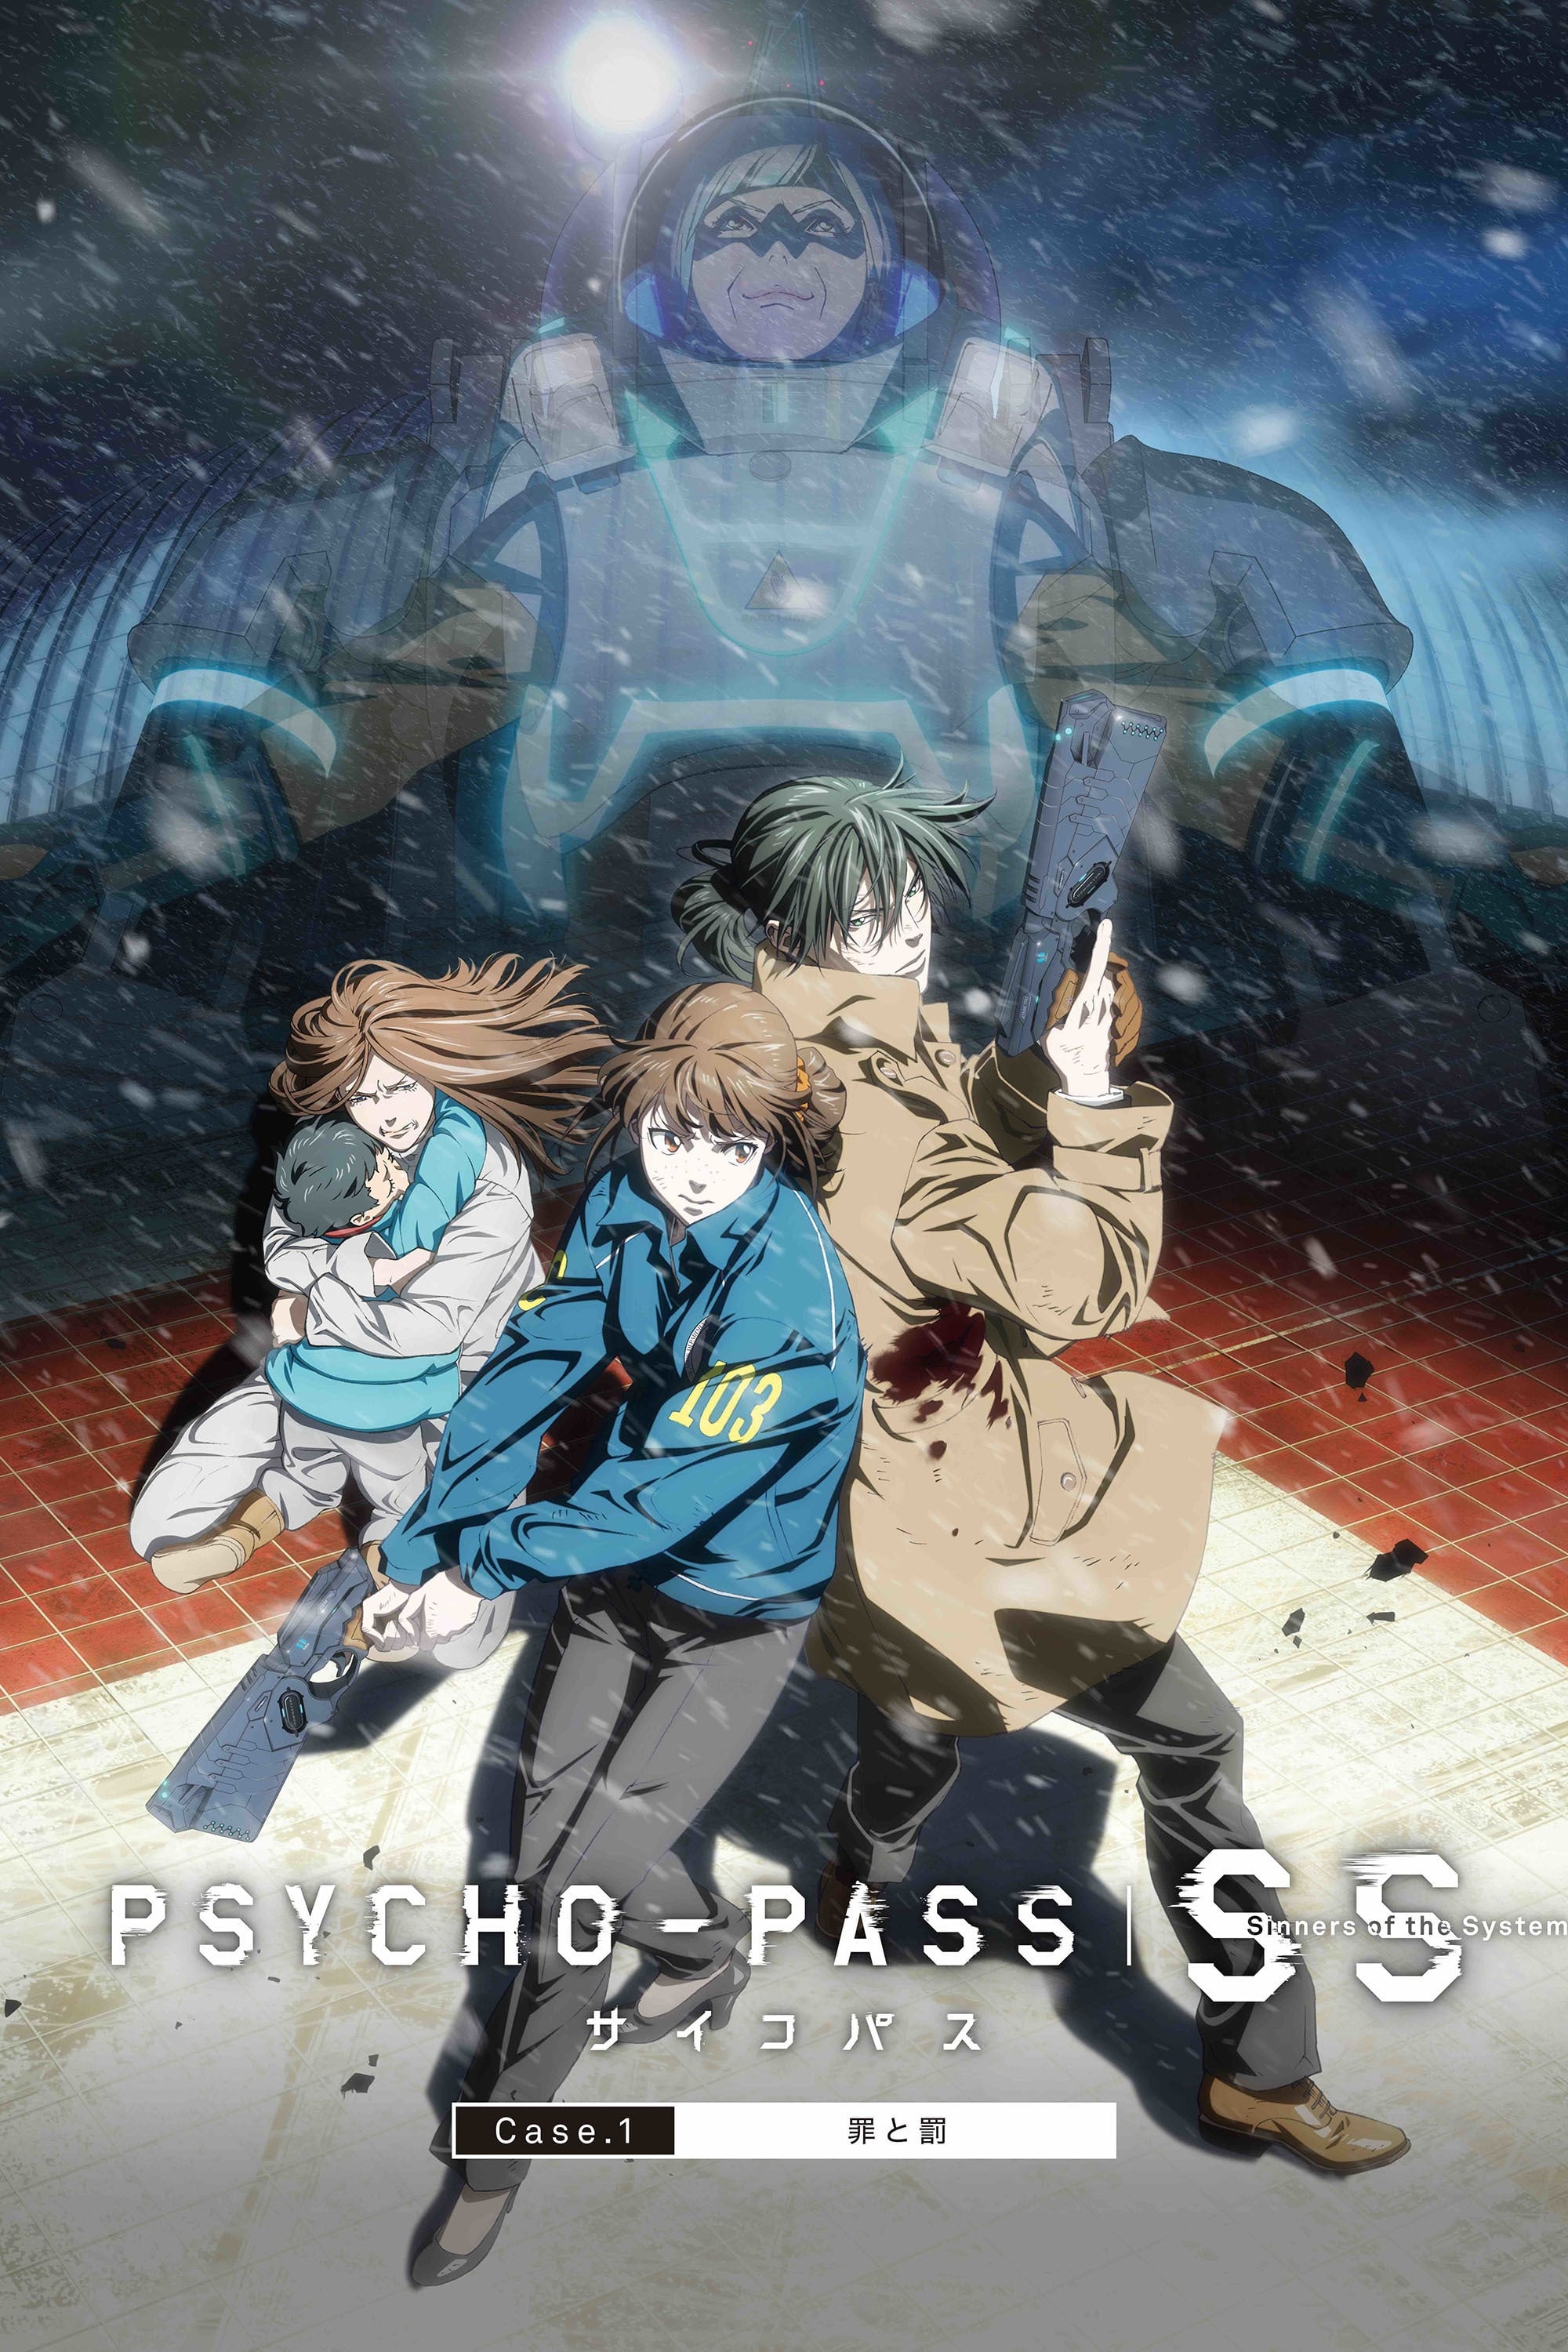 Psycho-Pass: Sinners of the System - Caso.1 Crimen y Castigo (2019)